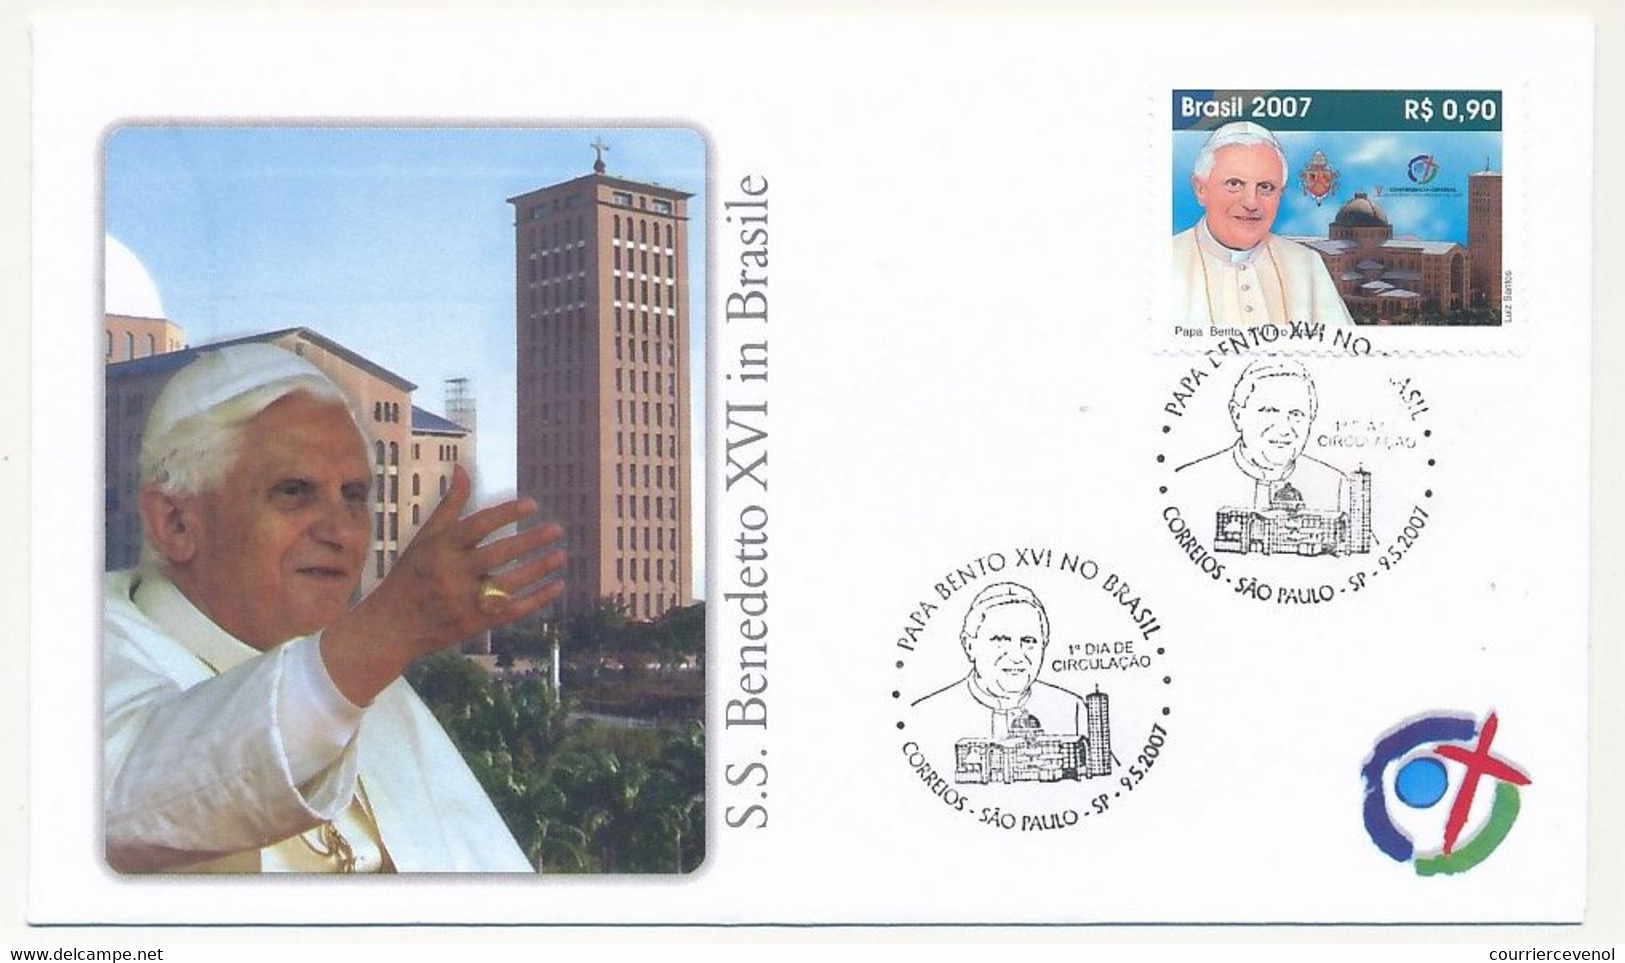 BRESIL - 7 Enveloppes Illustrées - Voyage Du Pape Benoit XVI Au Brésil - 2007 - Lettres & Documents